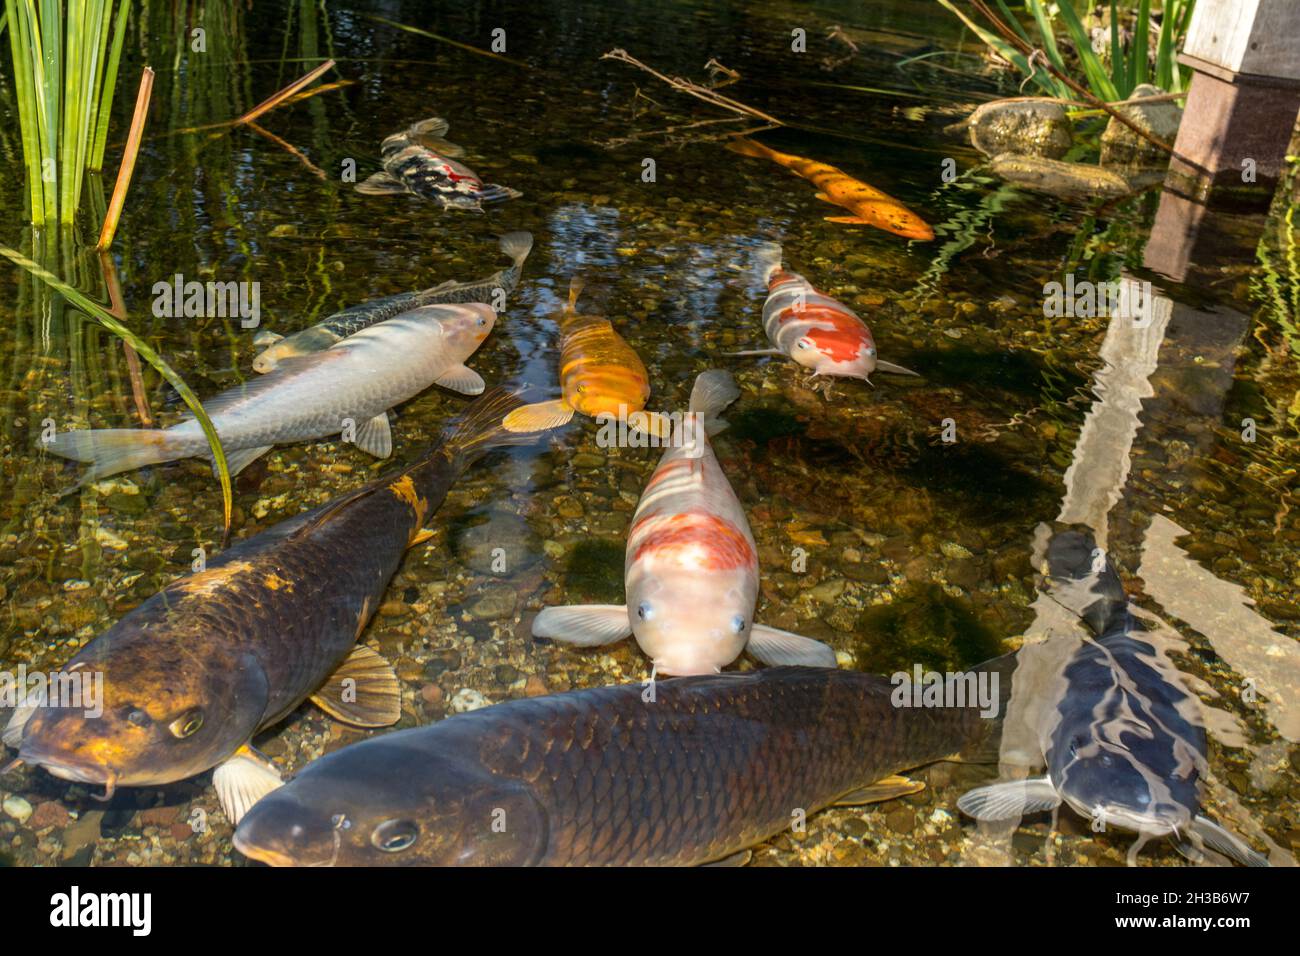 Koi carp in the pond Stock Photo